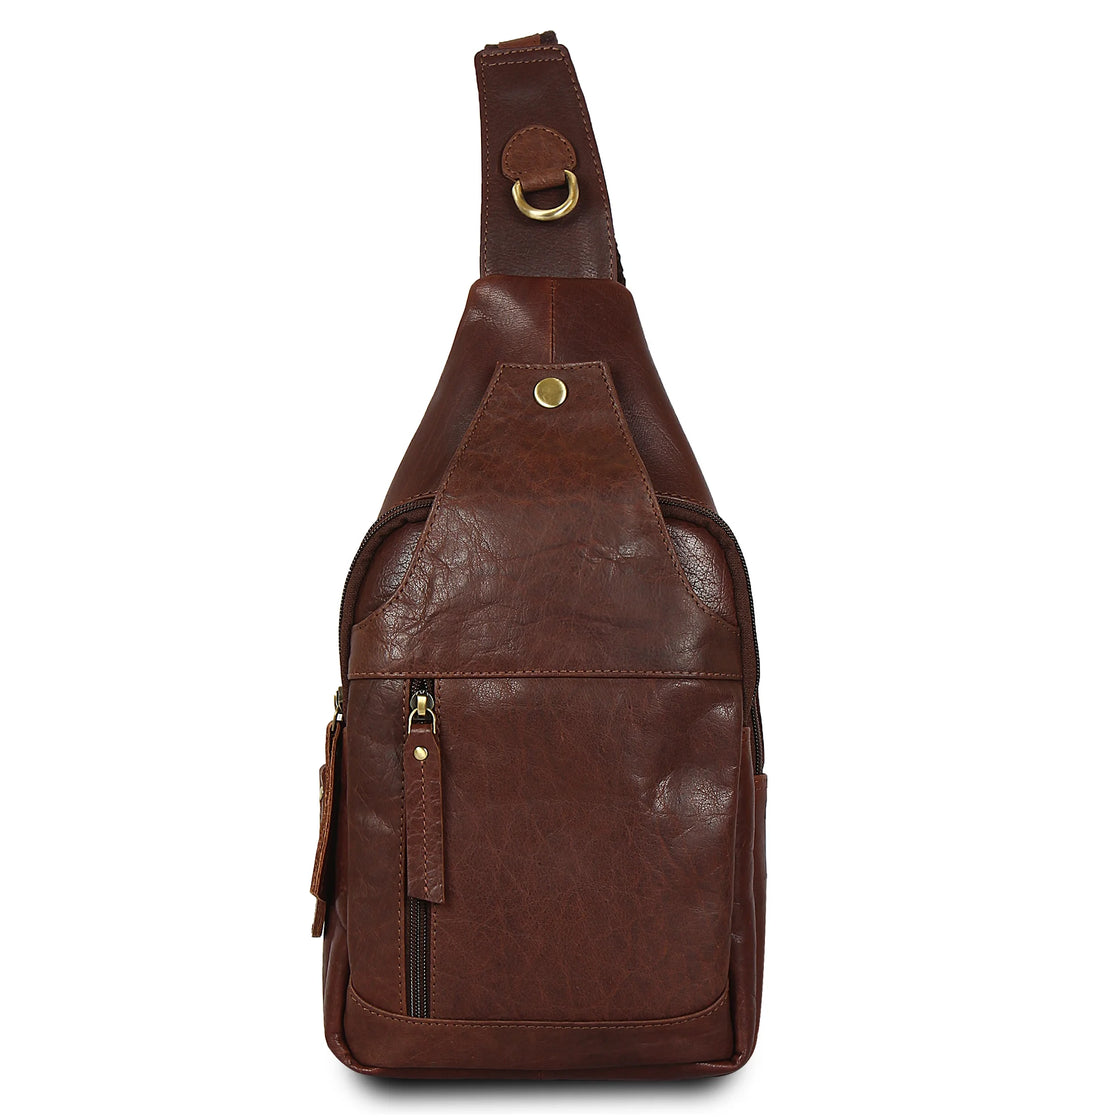 Men's Leather Sling Bag Chest Bag One Shoulder Bag Crossbody Bag